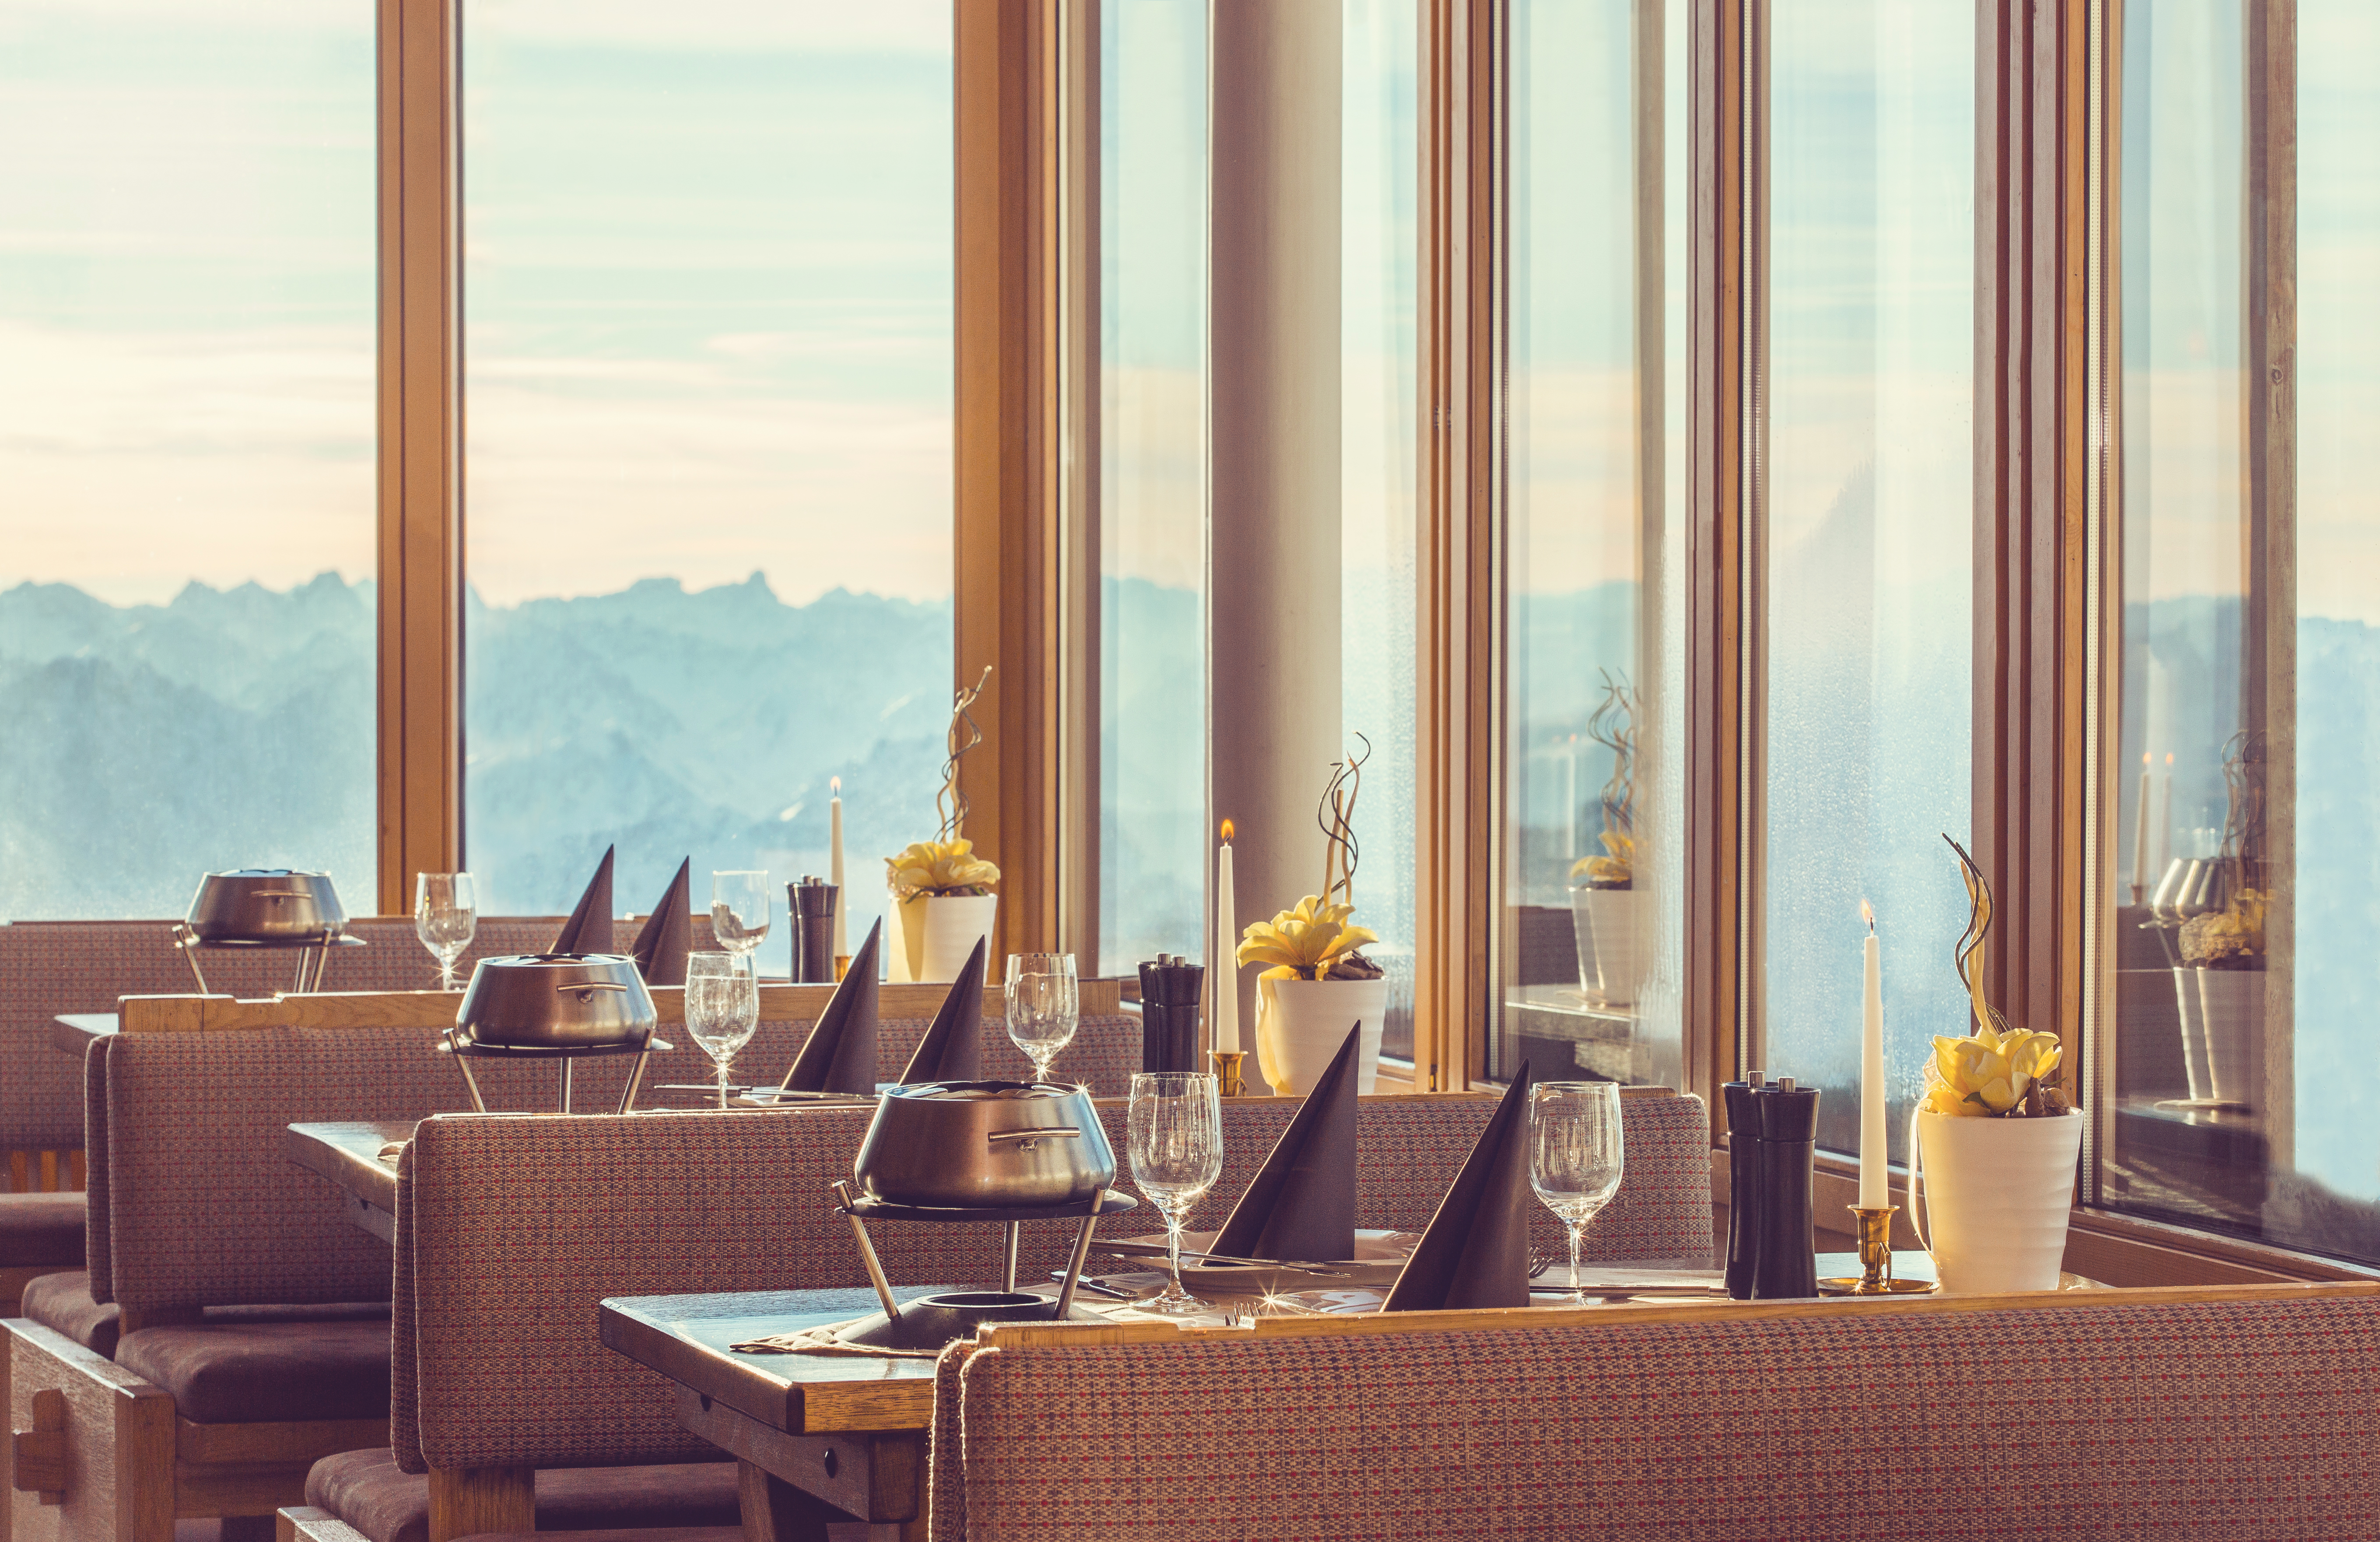 Panorama Gipfelrestaurant, Tiroler Zugspitzbahn - Österreich - uschi liebl pr, Top 10 PR-Agentur Tourismus, Lifestyle